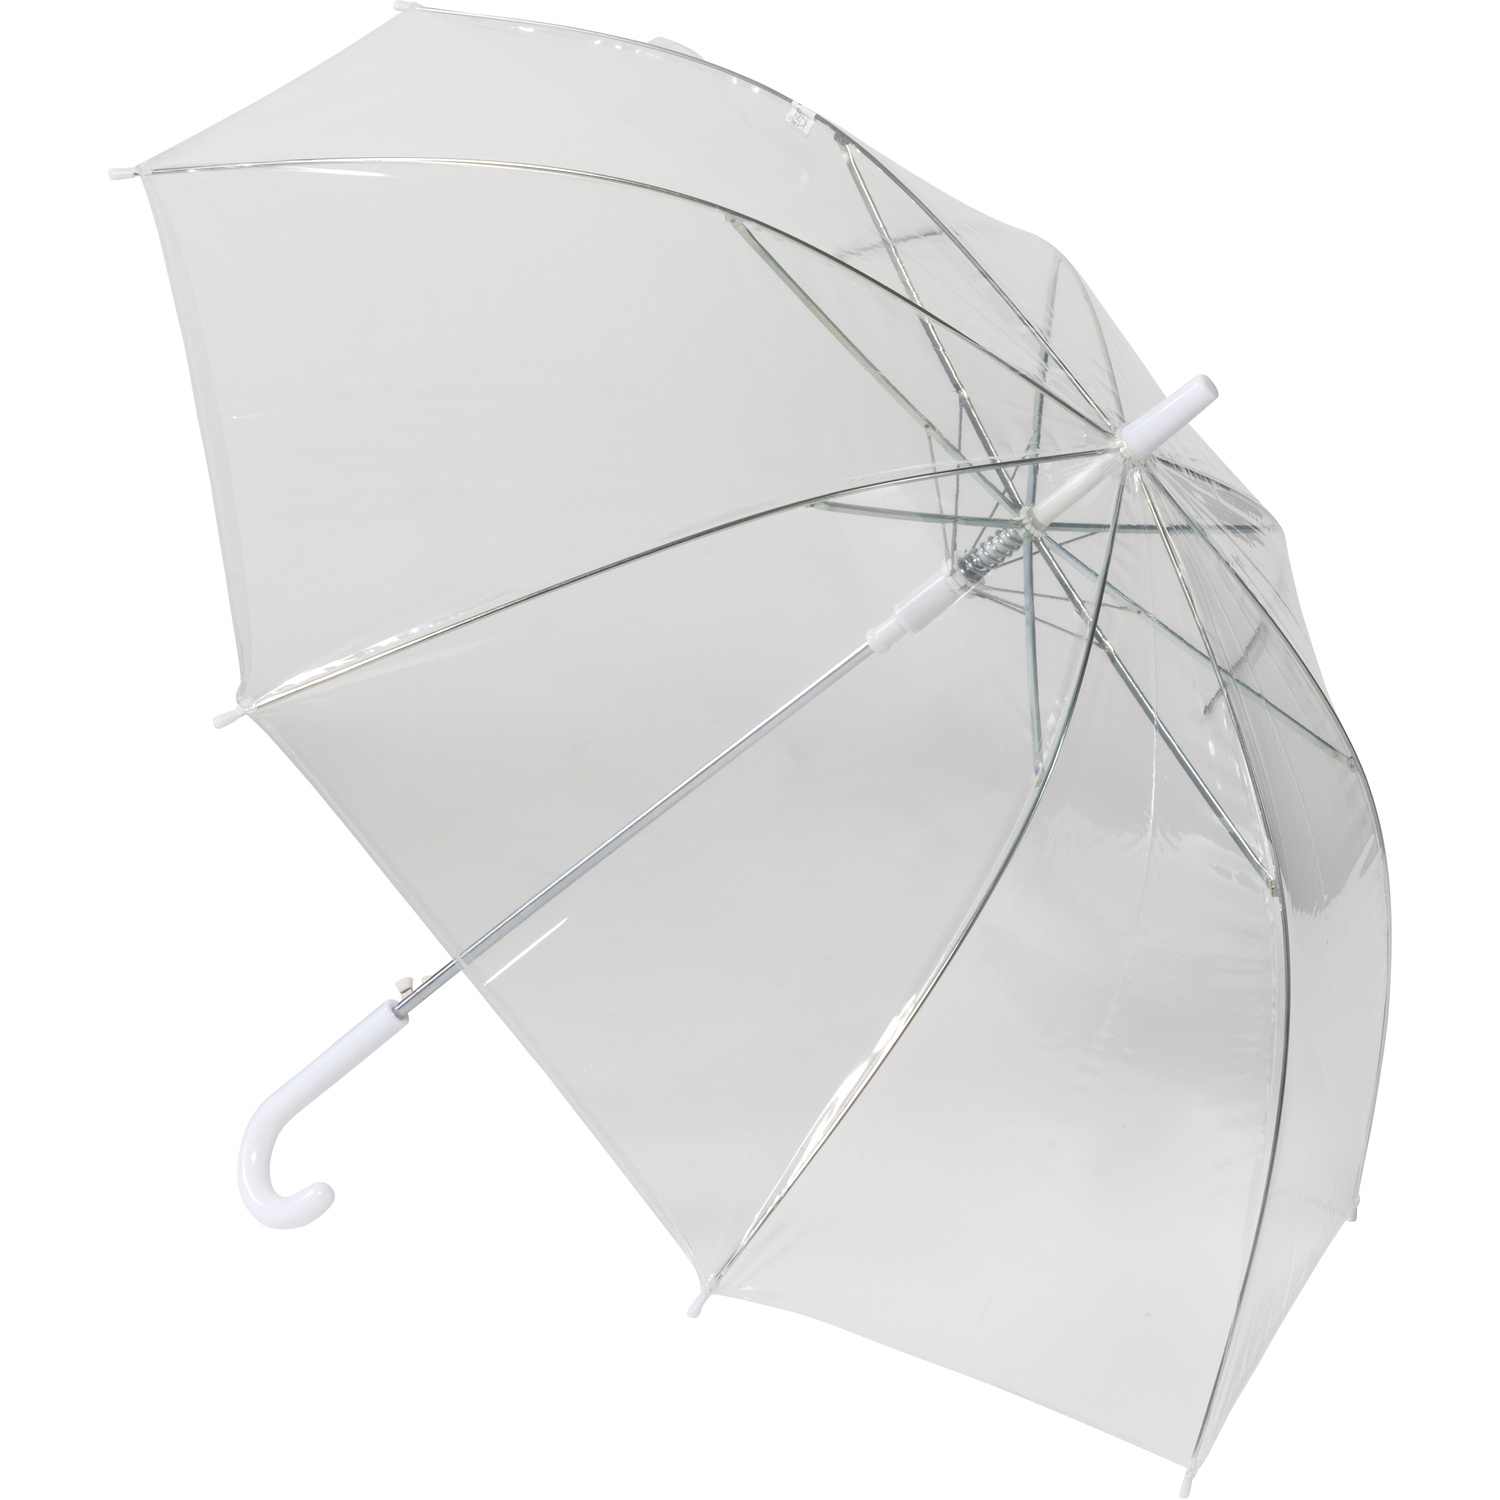 006487 002999999 3d045 rgt pro01 fal - Automatic umbrella